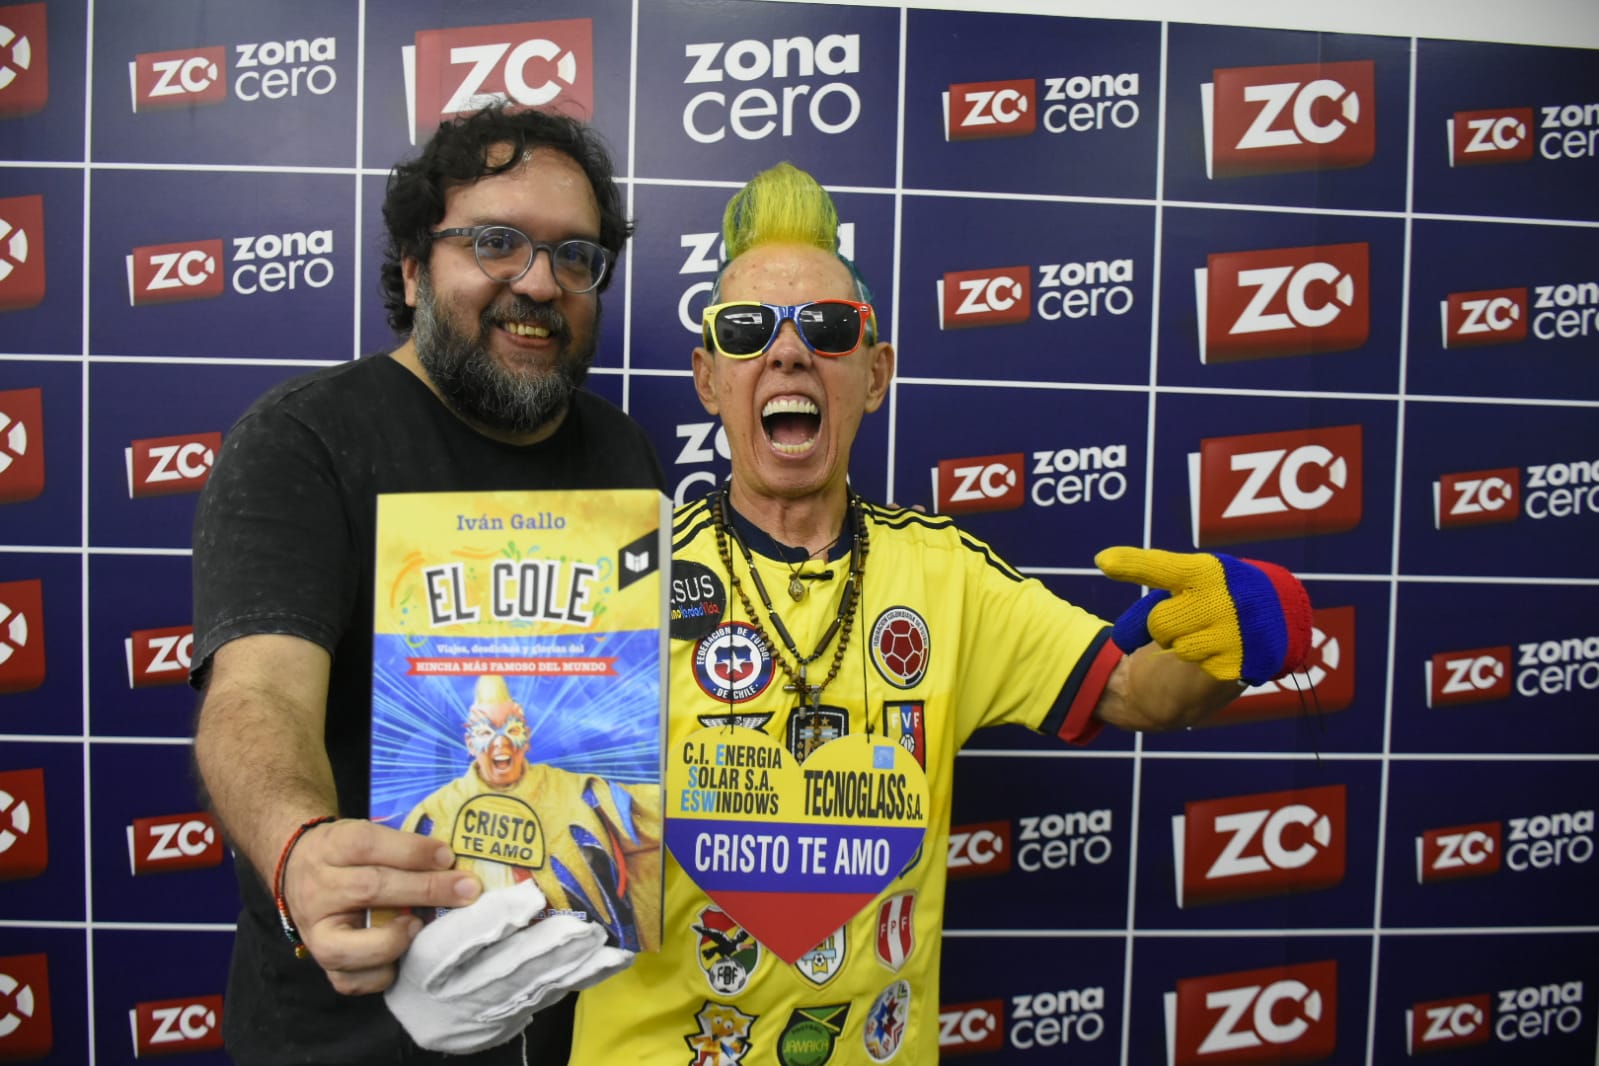 Con Iván Gallo, autor del libro, quien considera que con 'El Cole' ganó un amigo. 